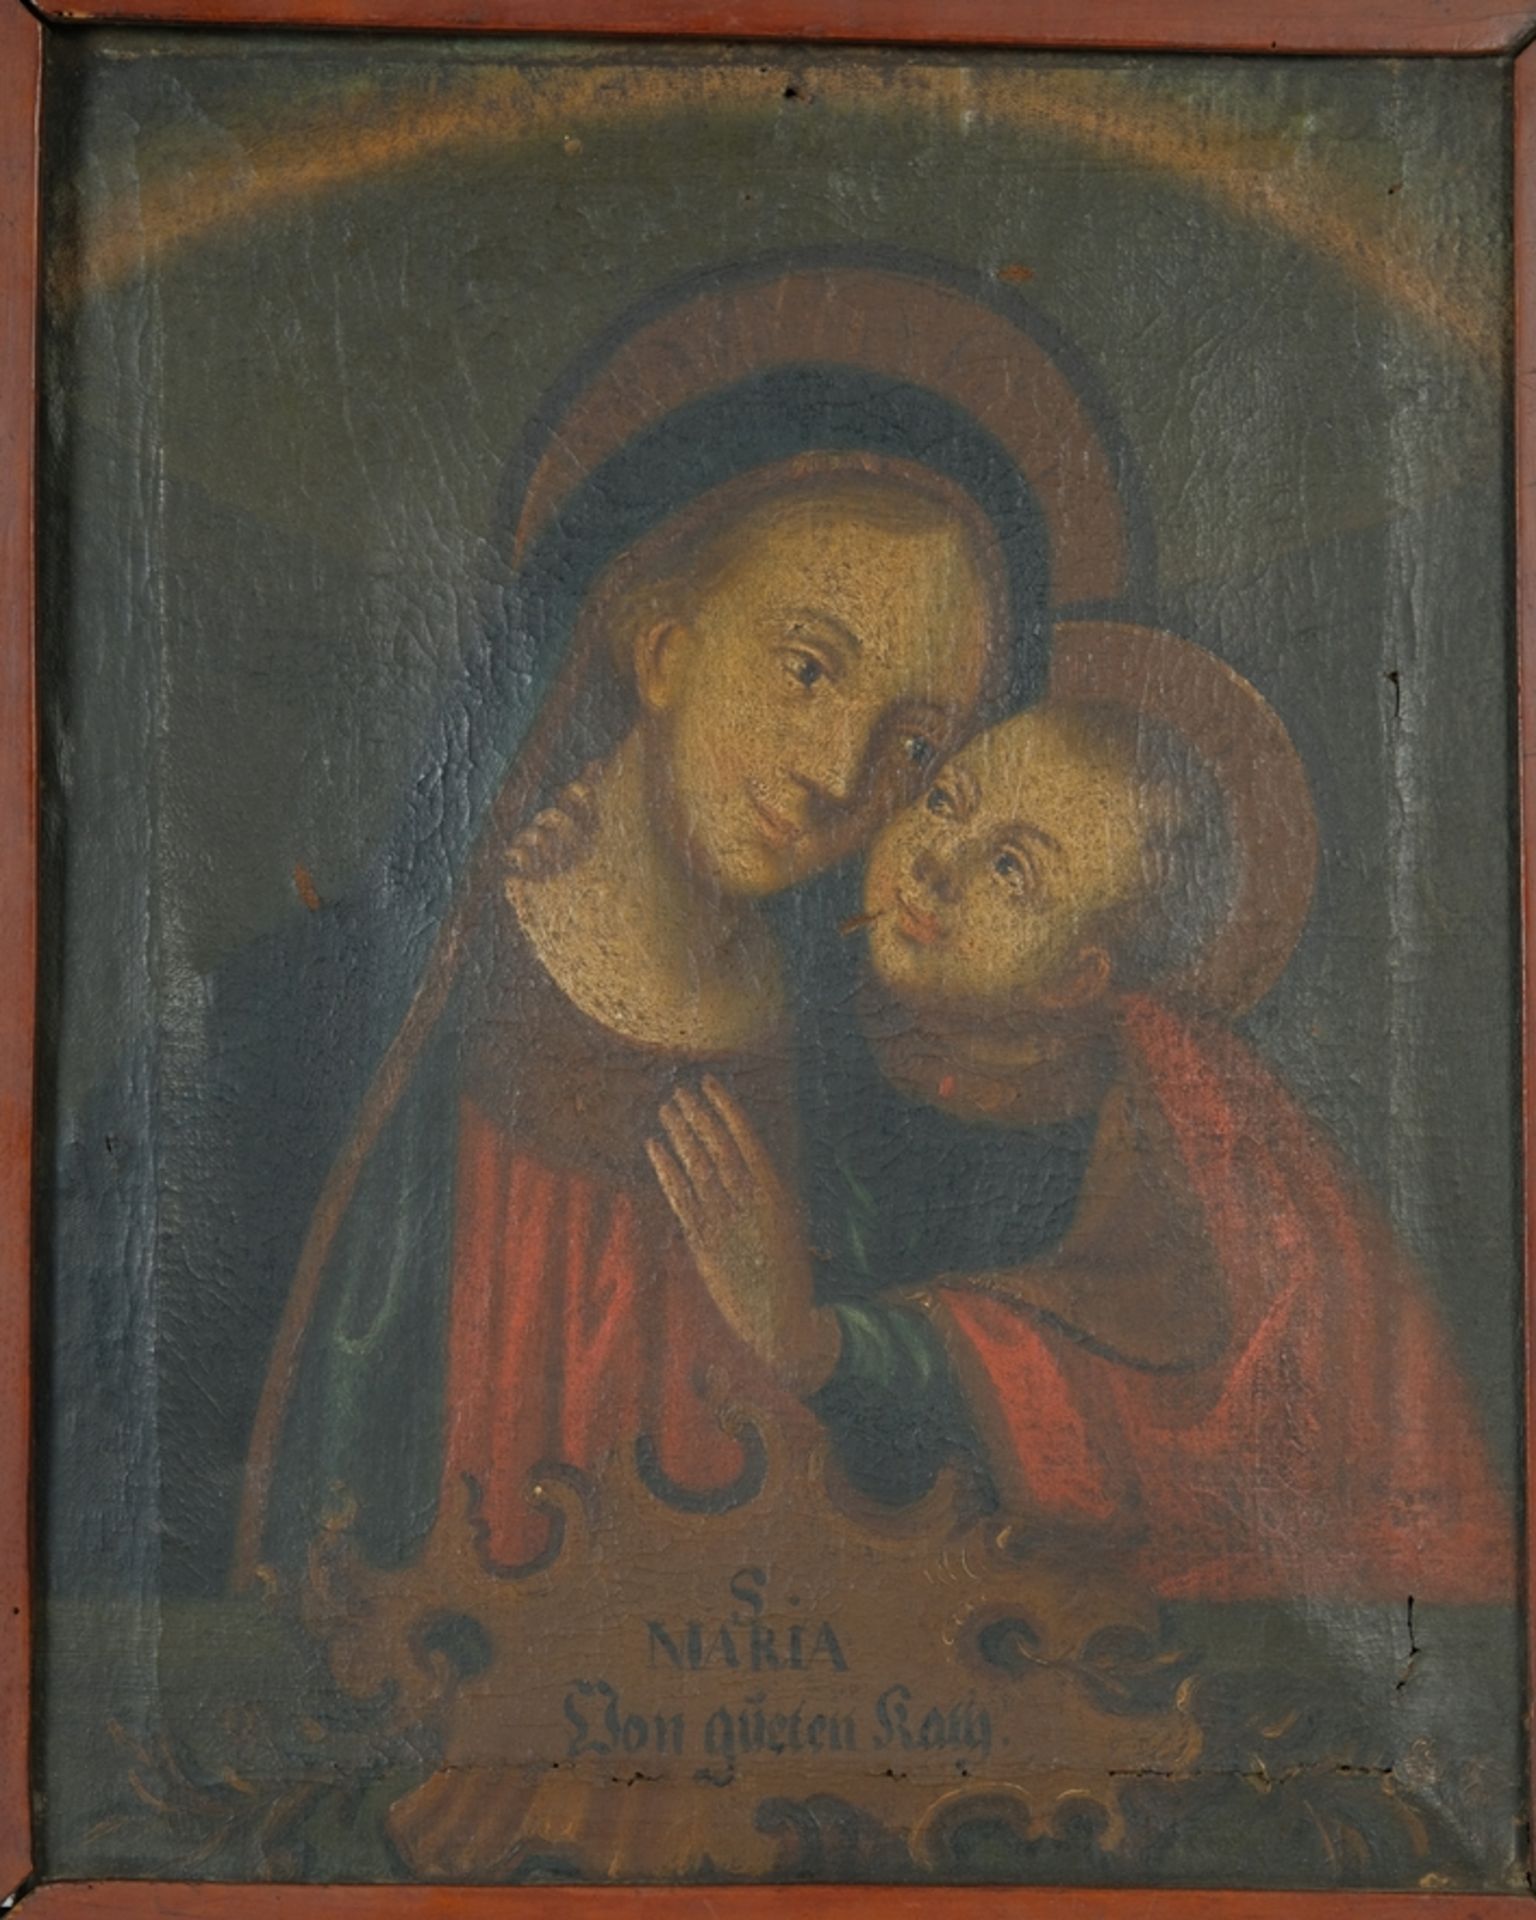 IKONE "Maria von gueten Rath", beschädigter Rahmen, Bild teils von Rahmen abgetrennt